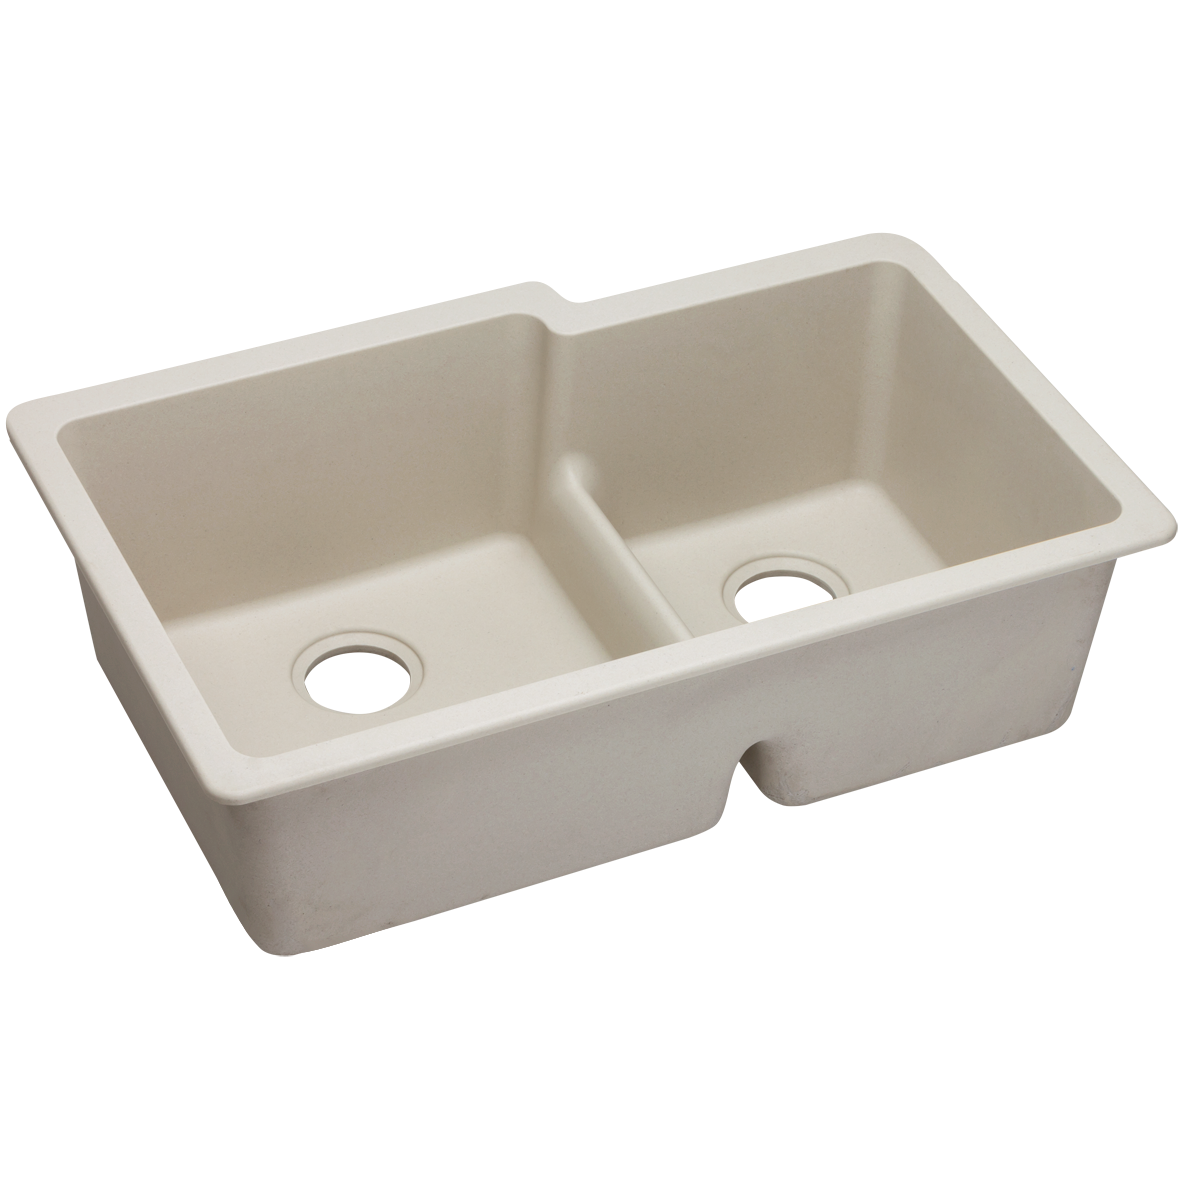 Quartz Classic 33x20-1/2x9-1/2" Double Bowl Sink Bisque